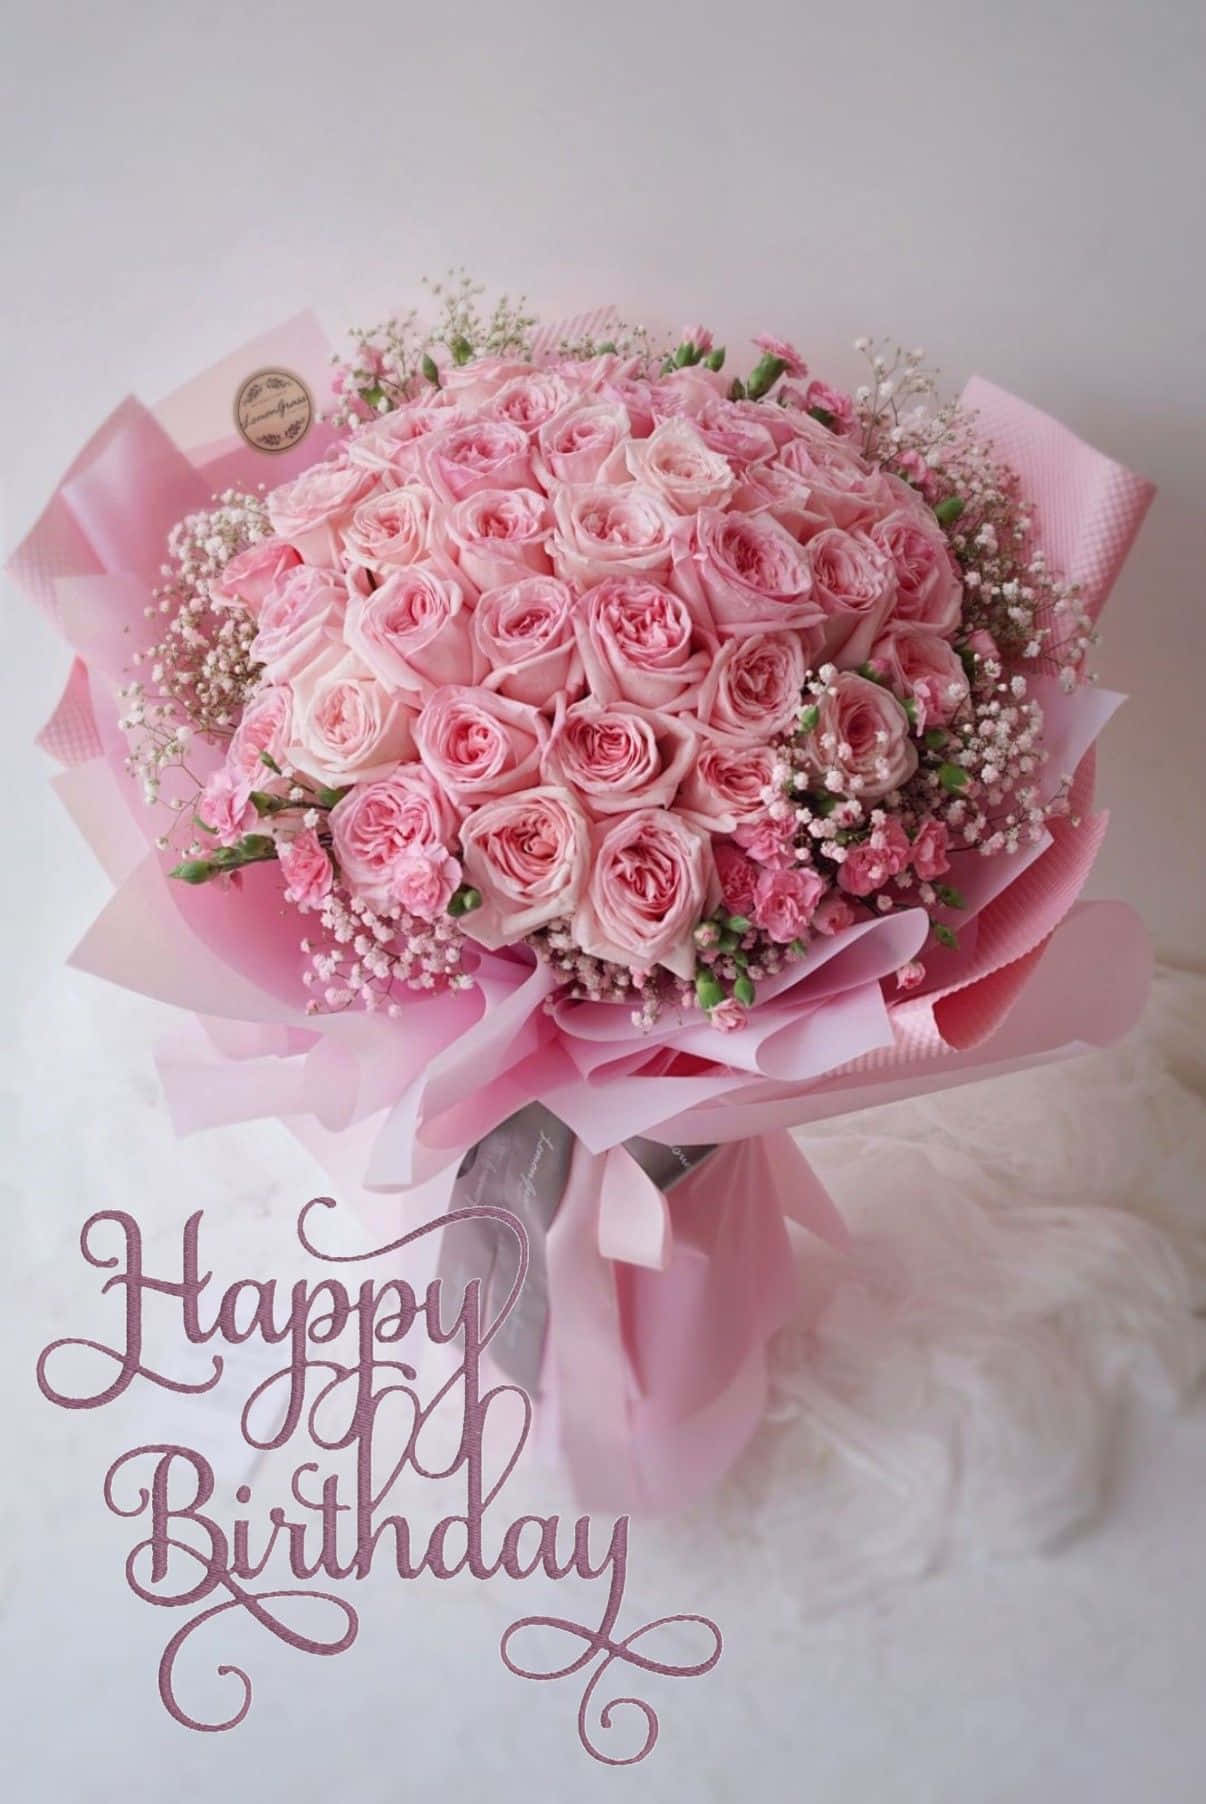 Mensajede Cumpleaños Con Imagen De Flores Rosas.